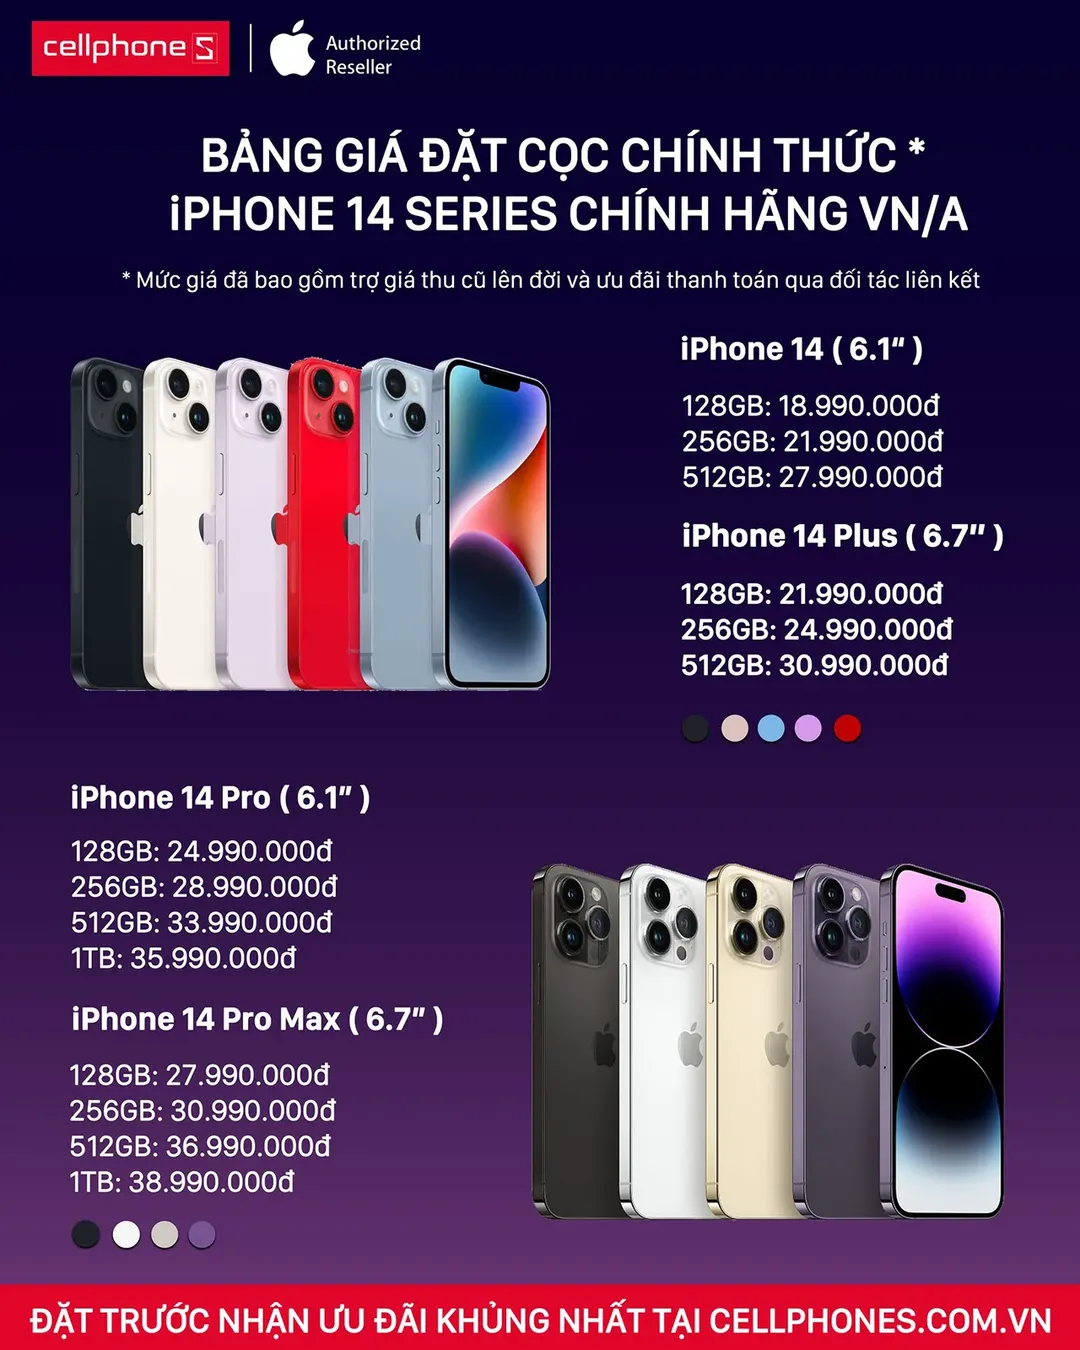 Giá mua iPhone 14 ở đâu rẻ nhất? Lựa chọn iPhone 14 ở đâu giá tốt nhất